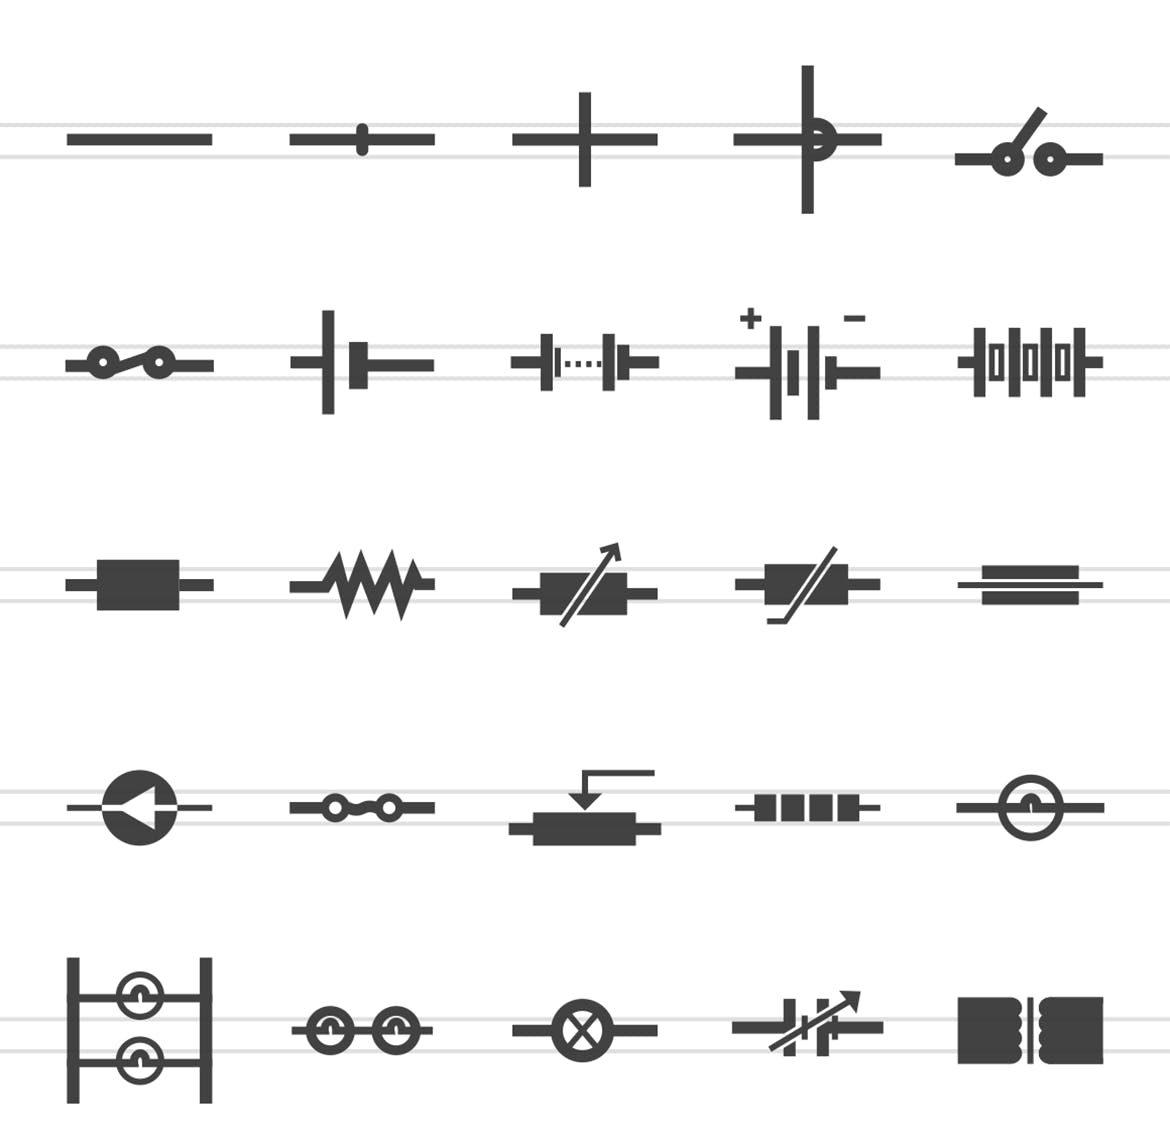 50枚电路线路板主题黑色字体16设计素材网精选图标 50 Electric Circuits Glyph Icons插图(1)